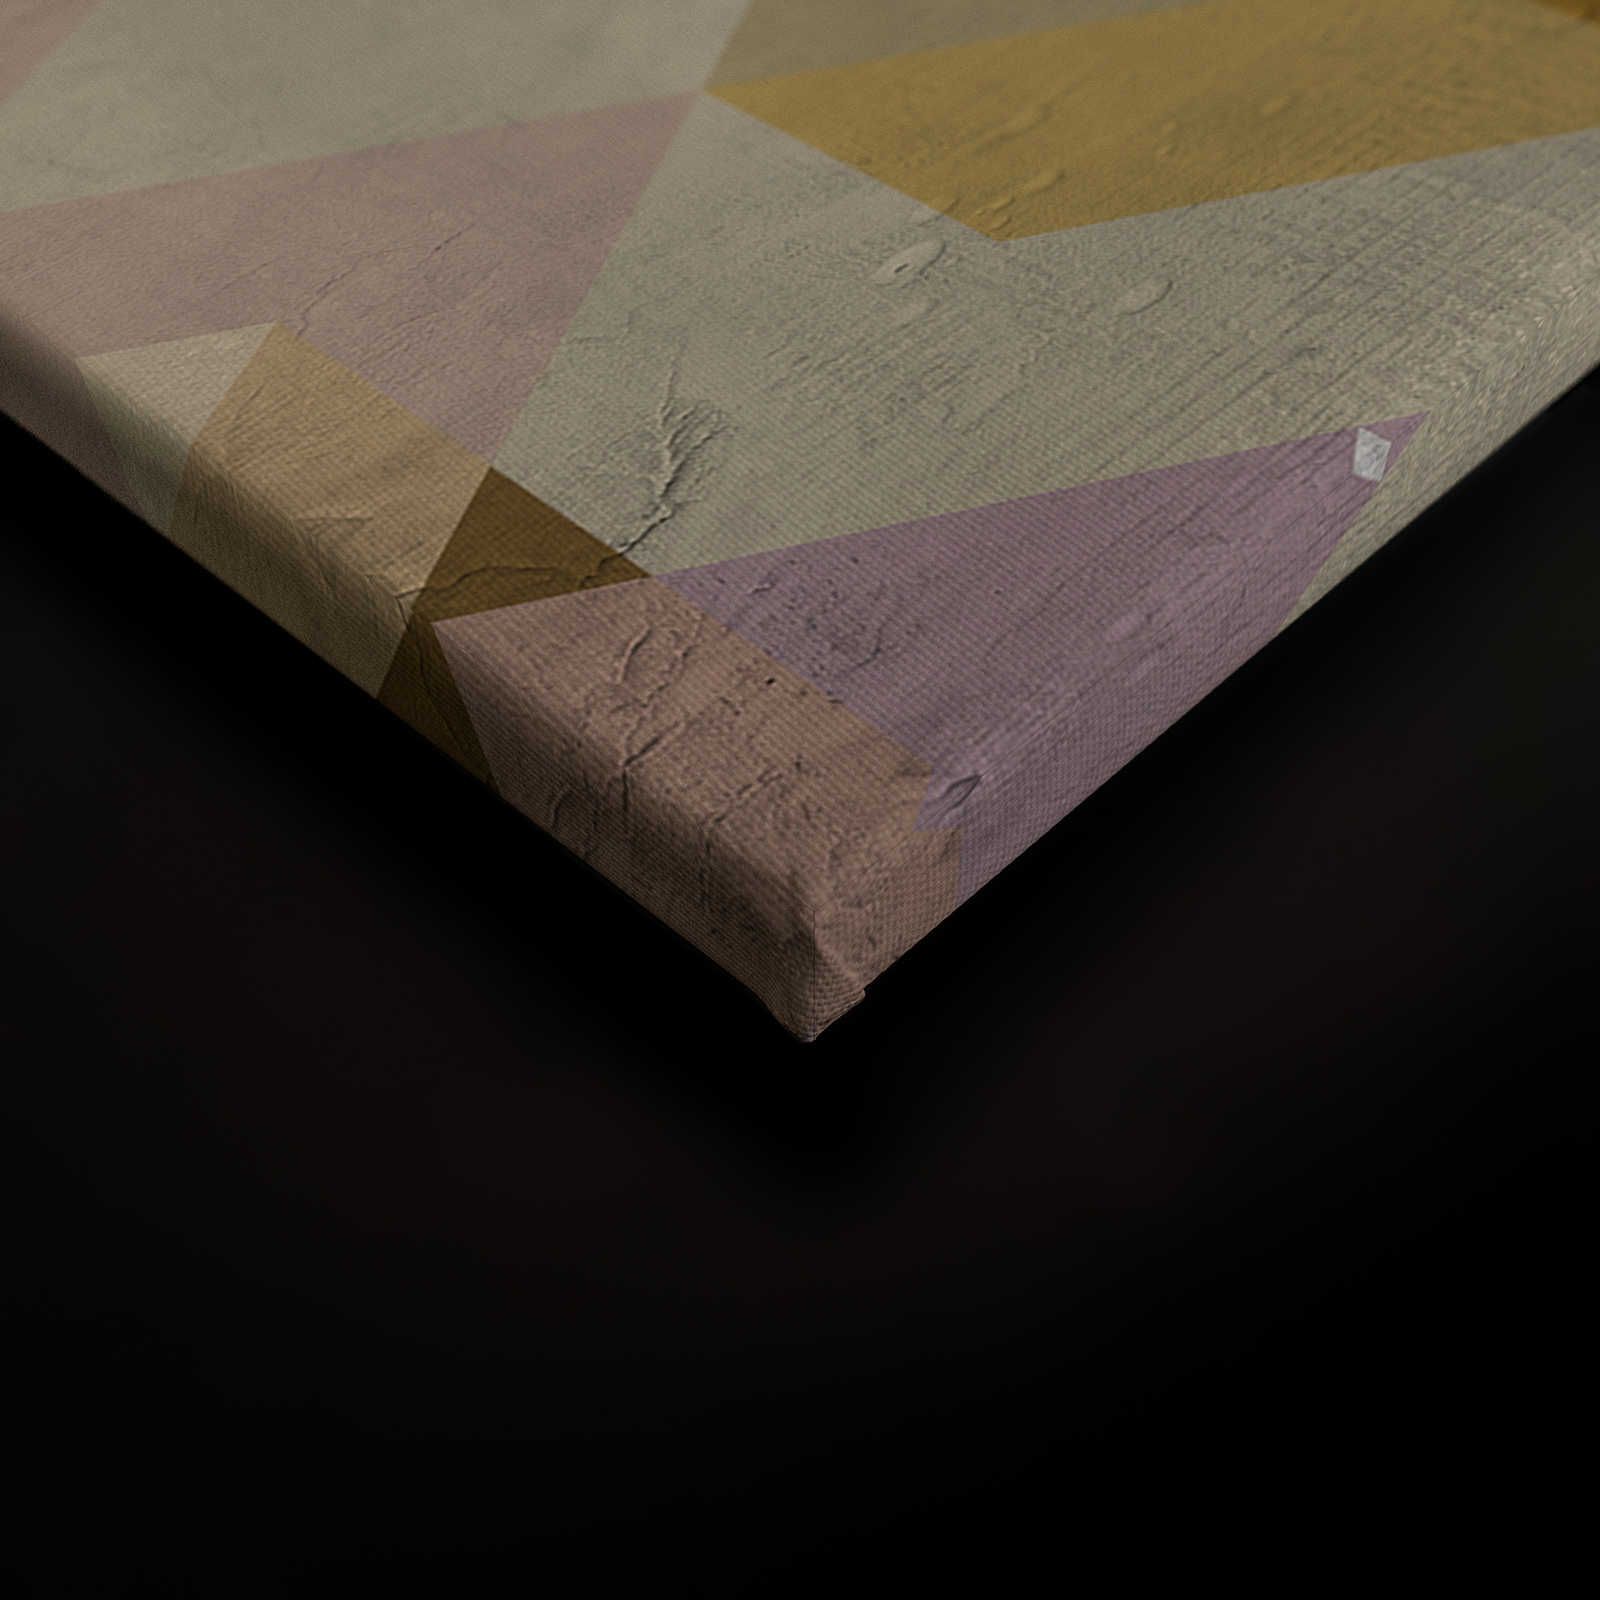             Toile losange, multicolore & géométrique, aspect usé - 0,90 m x 0,60 m
        